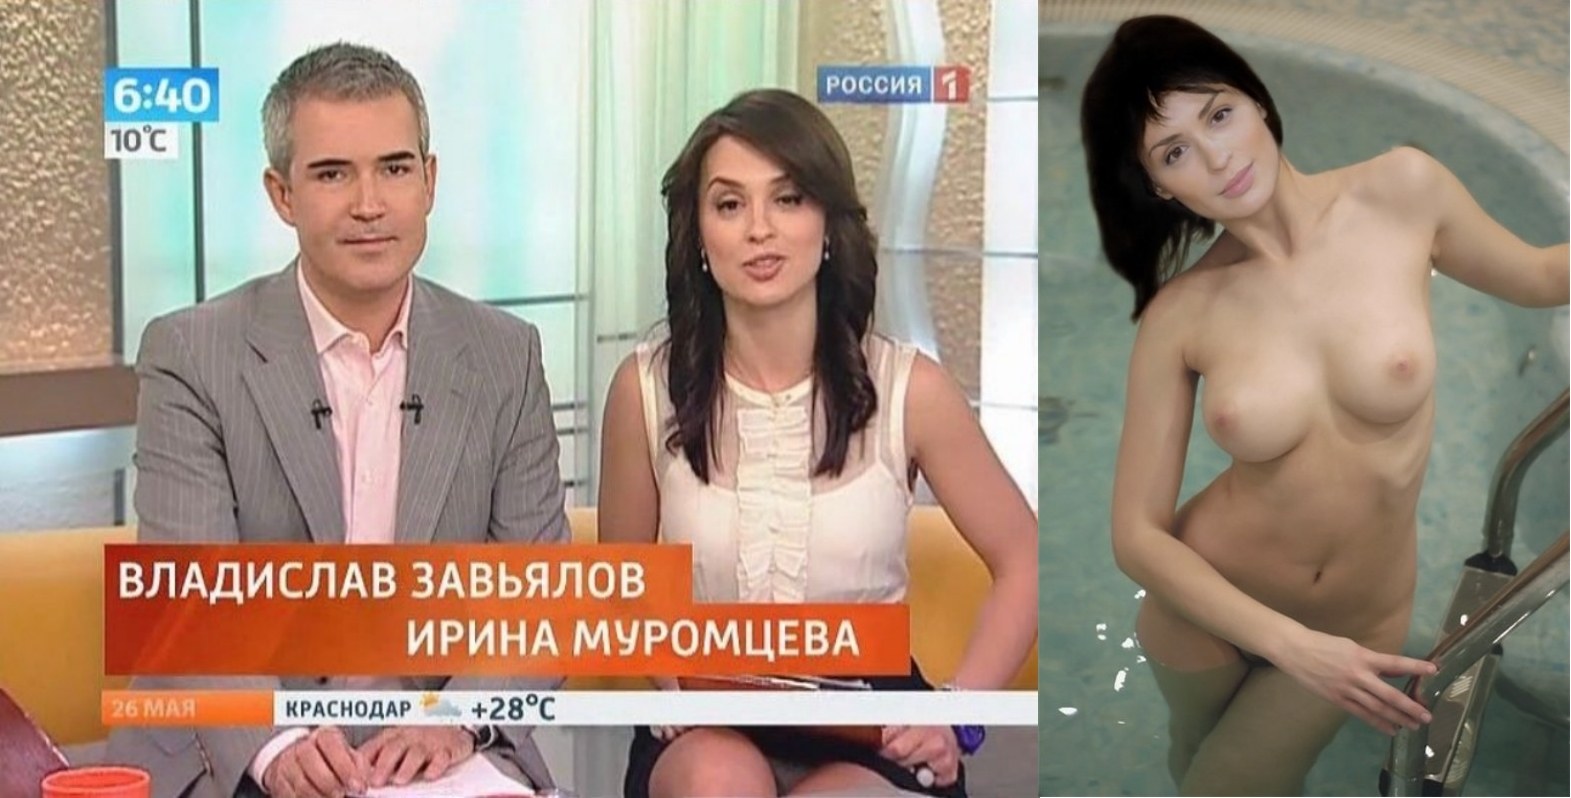 голая фото российских телеведущих фото 13